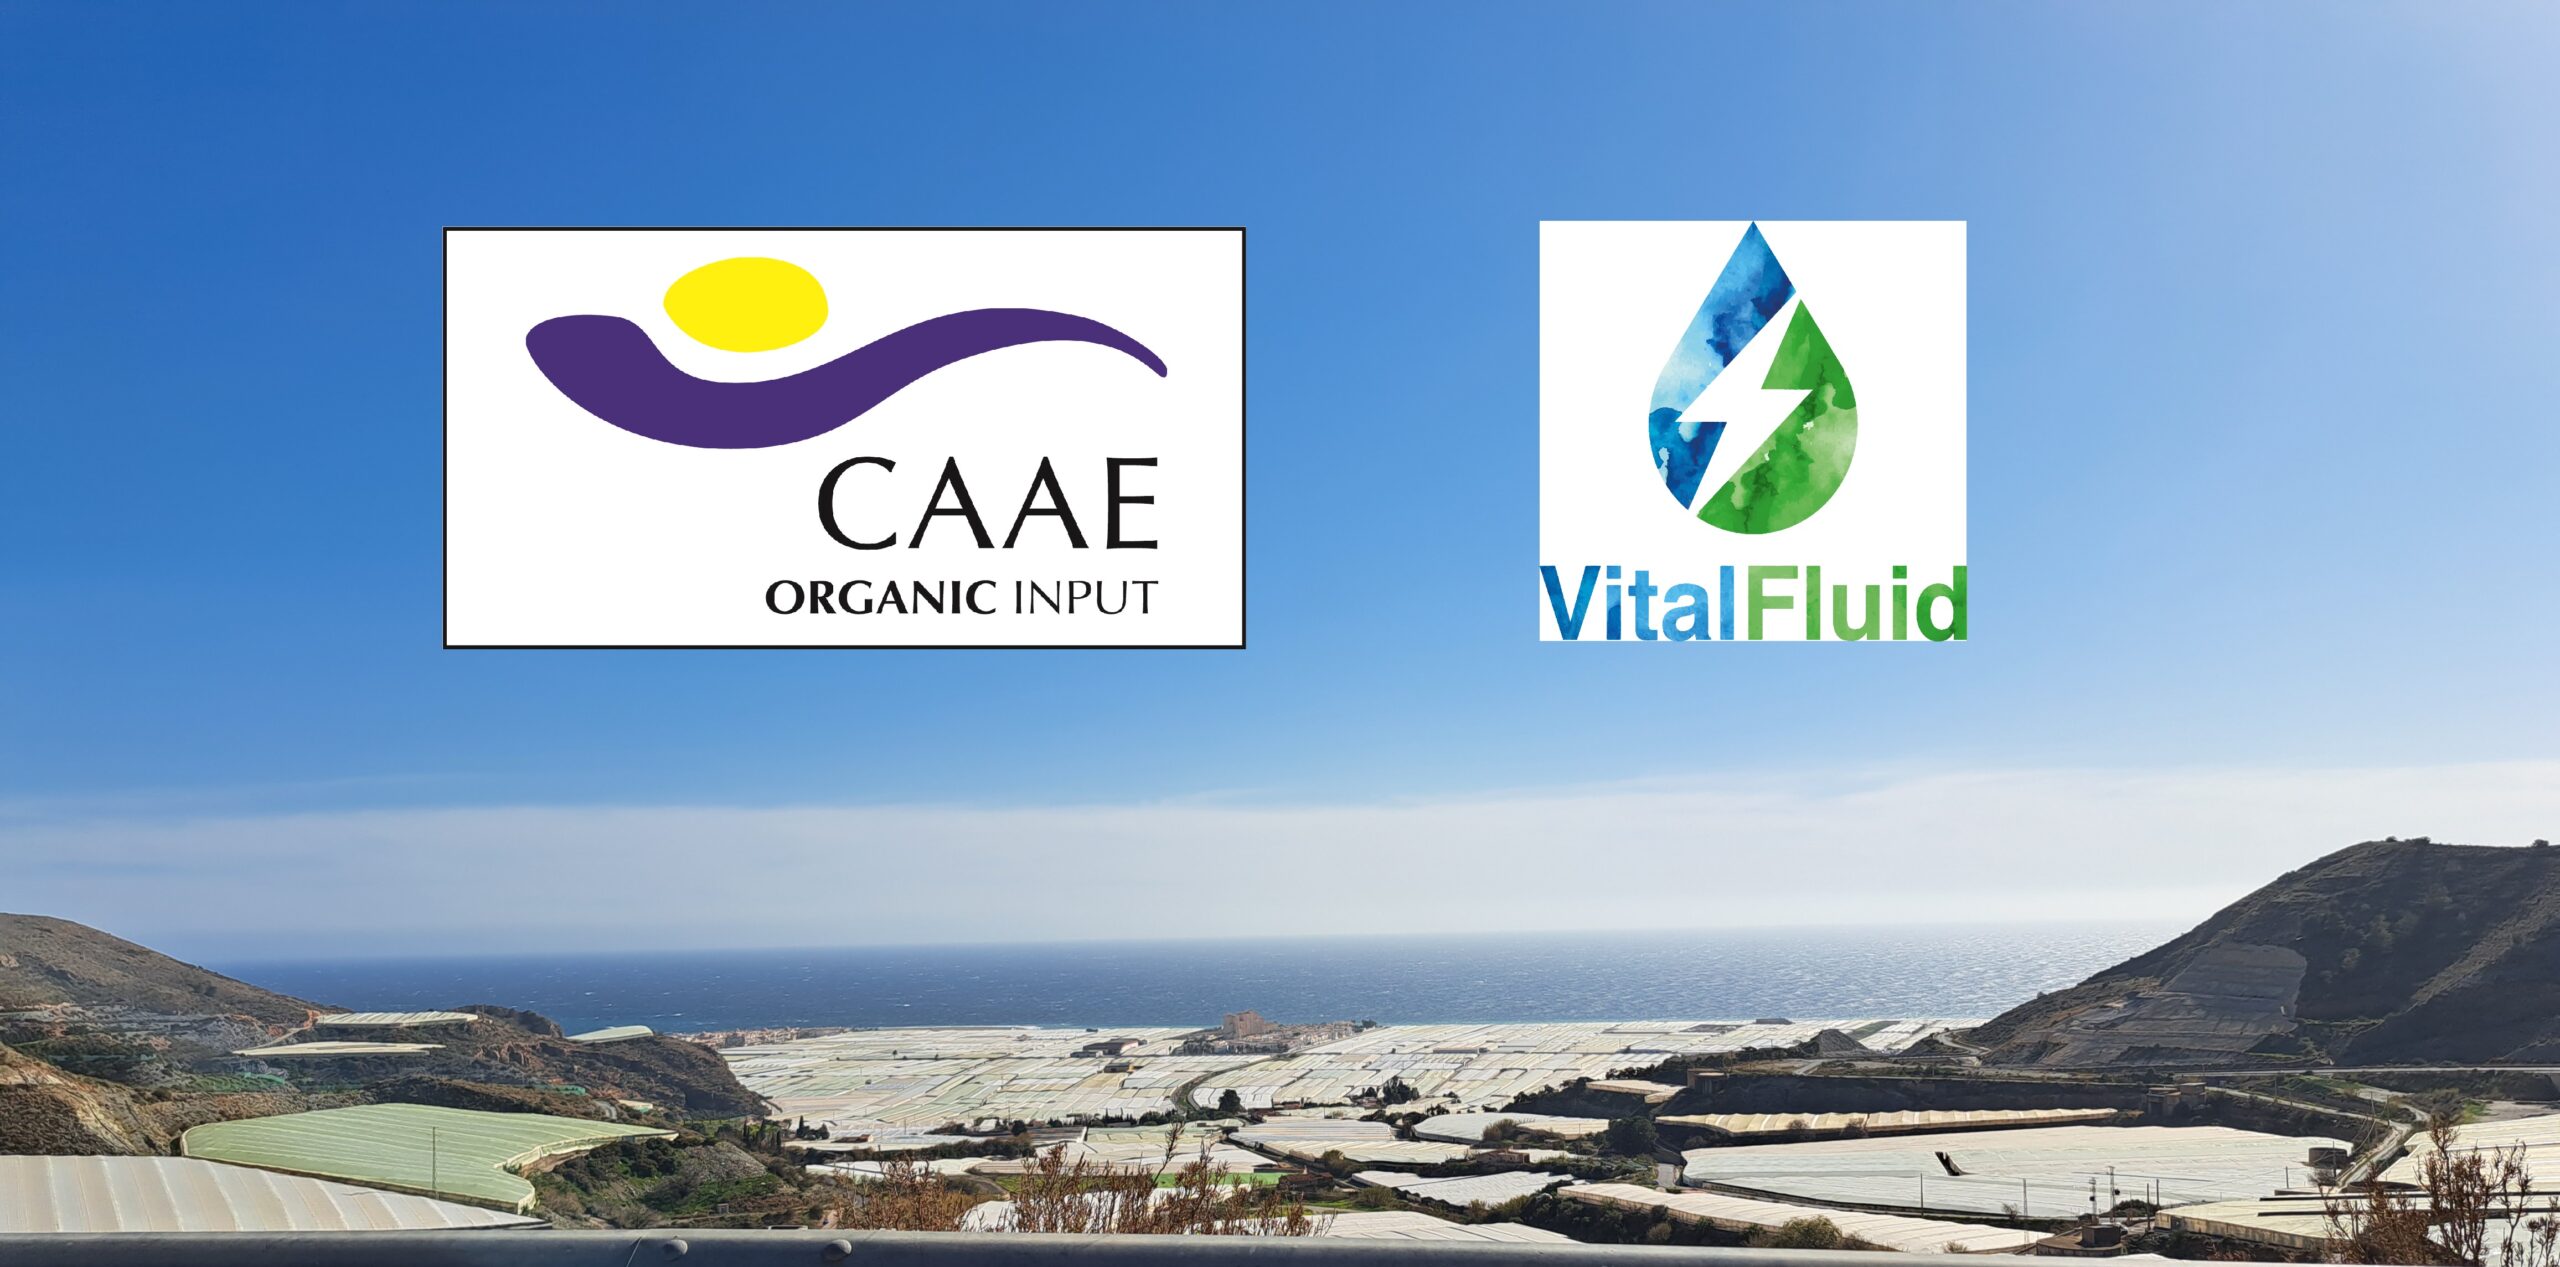 Certificado ecológico VitalFluid CAAE